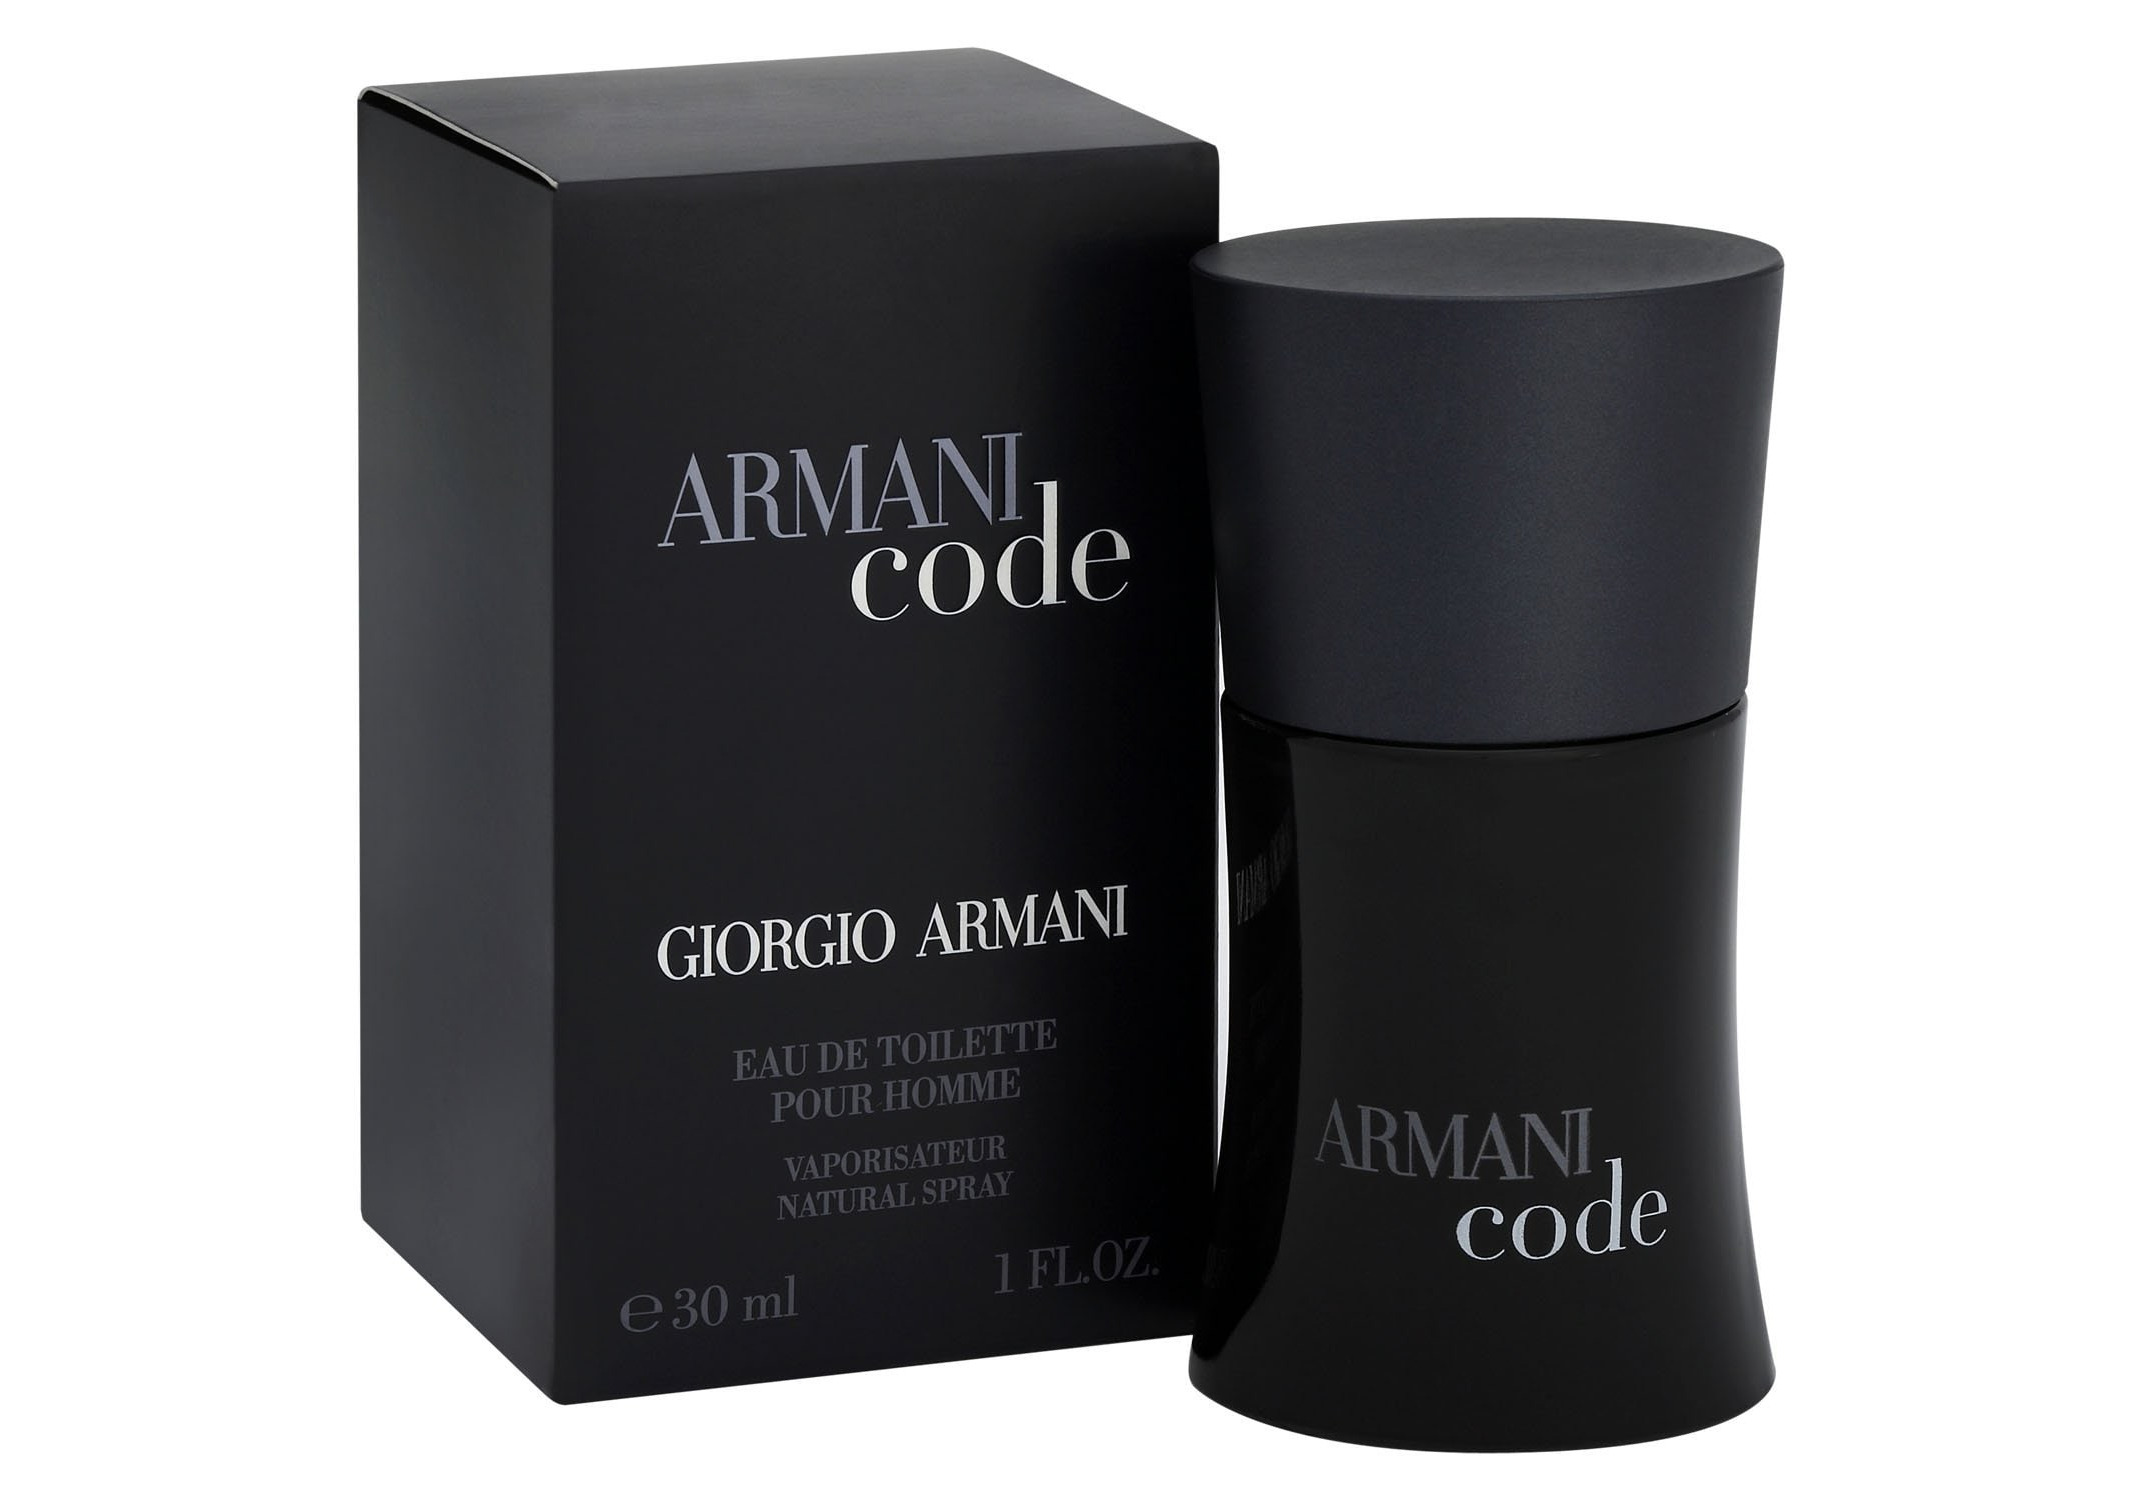 Армани мужские ароматы. Giorgio Armani "Armani code Parfum" 125 ml. Giorgio Armani code мужские духи. Armani code Parfum Giorgio Armani для мужчин. Giorgio Armani Armani code.